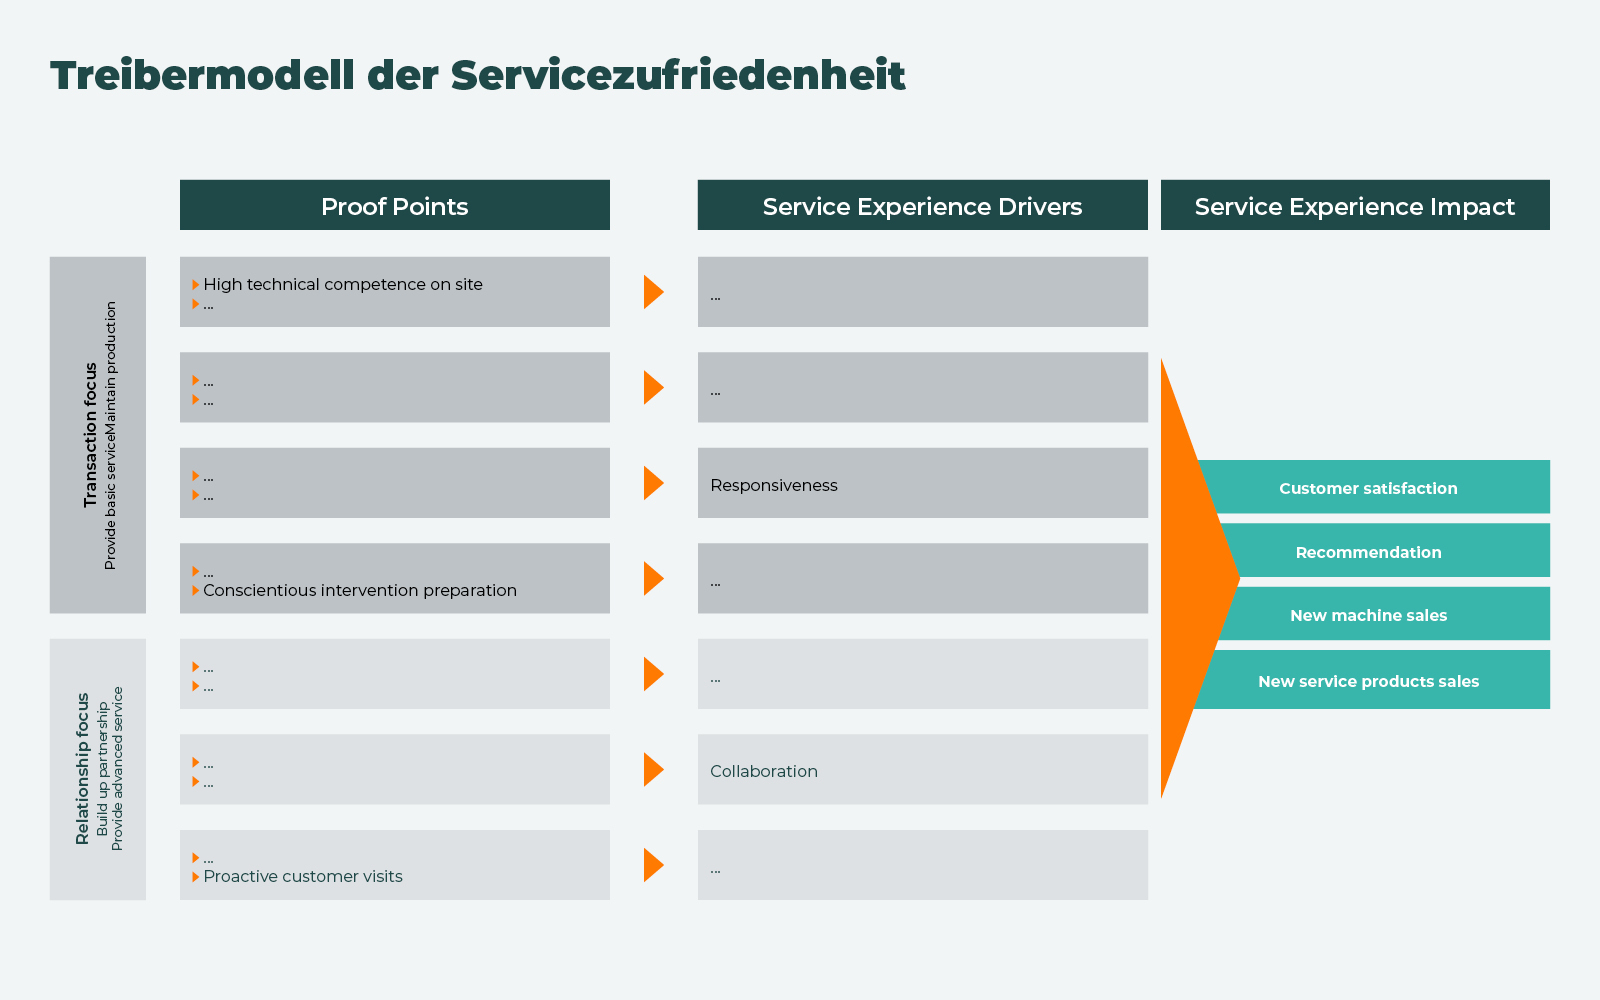 Treibermodell der Servicetransformation